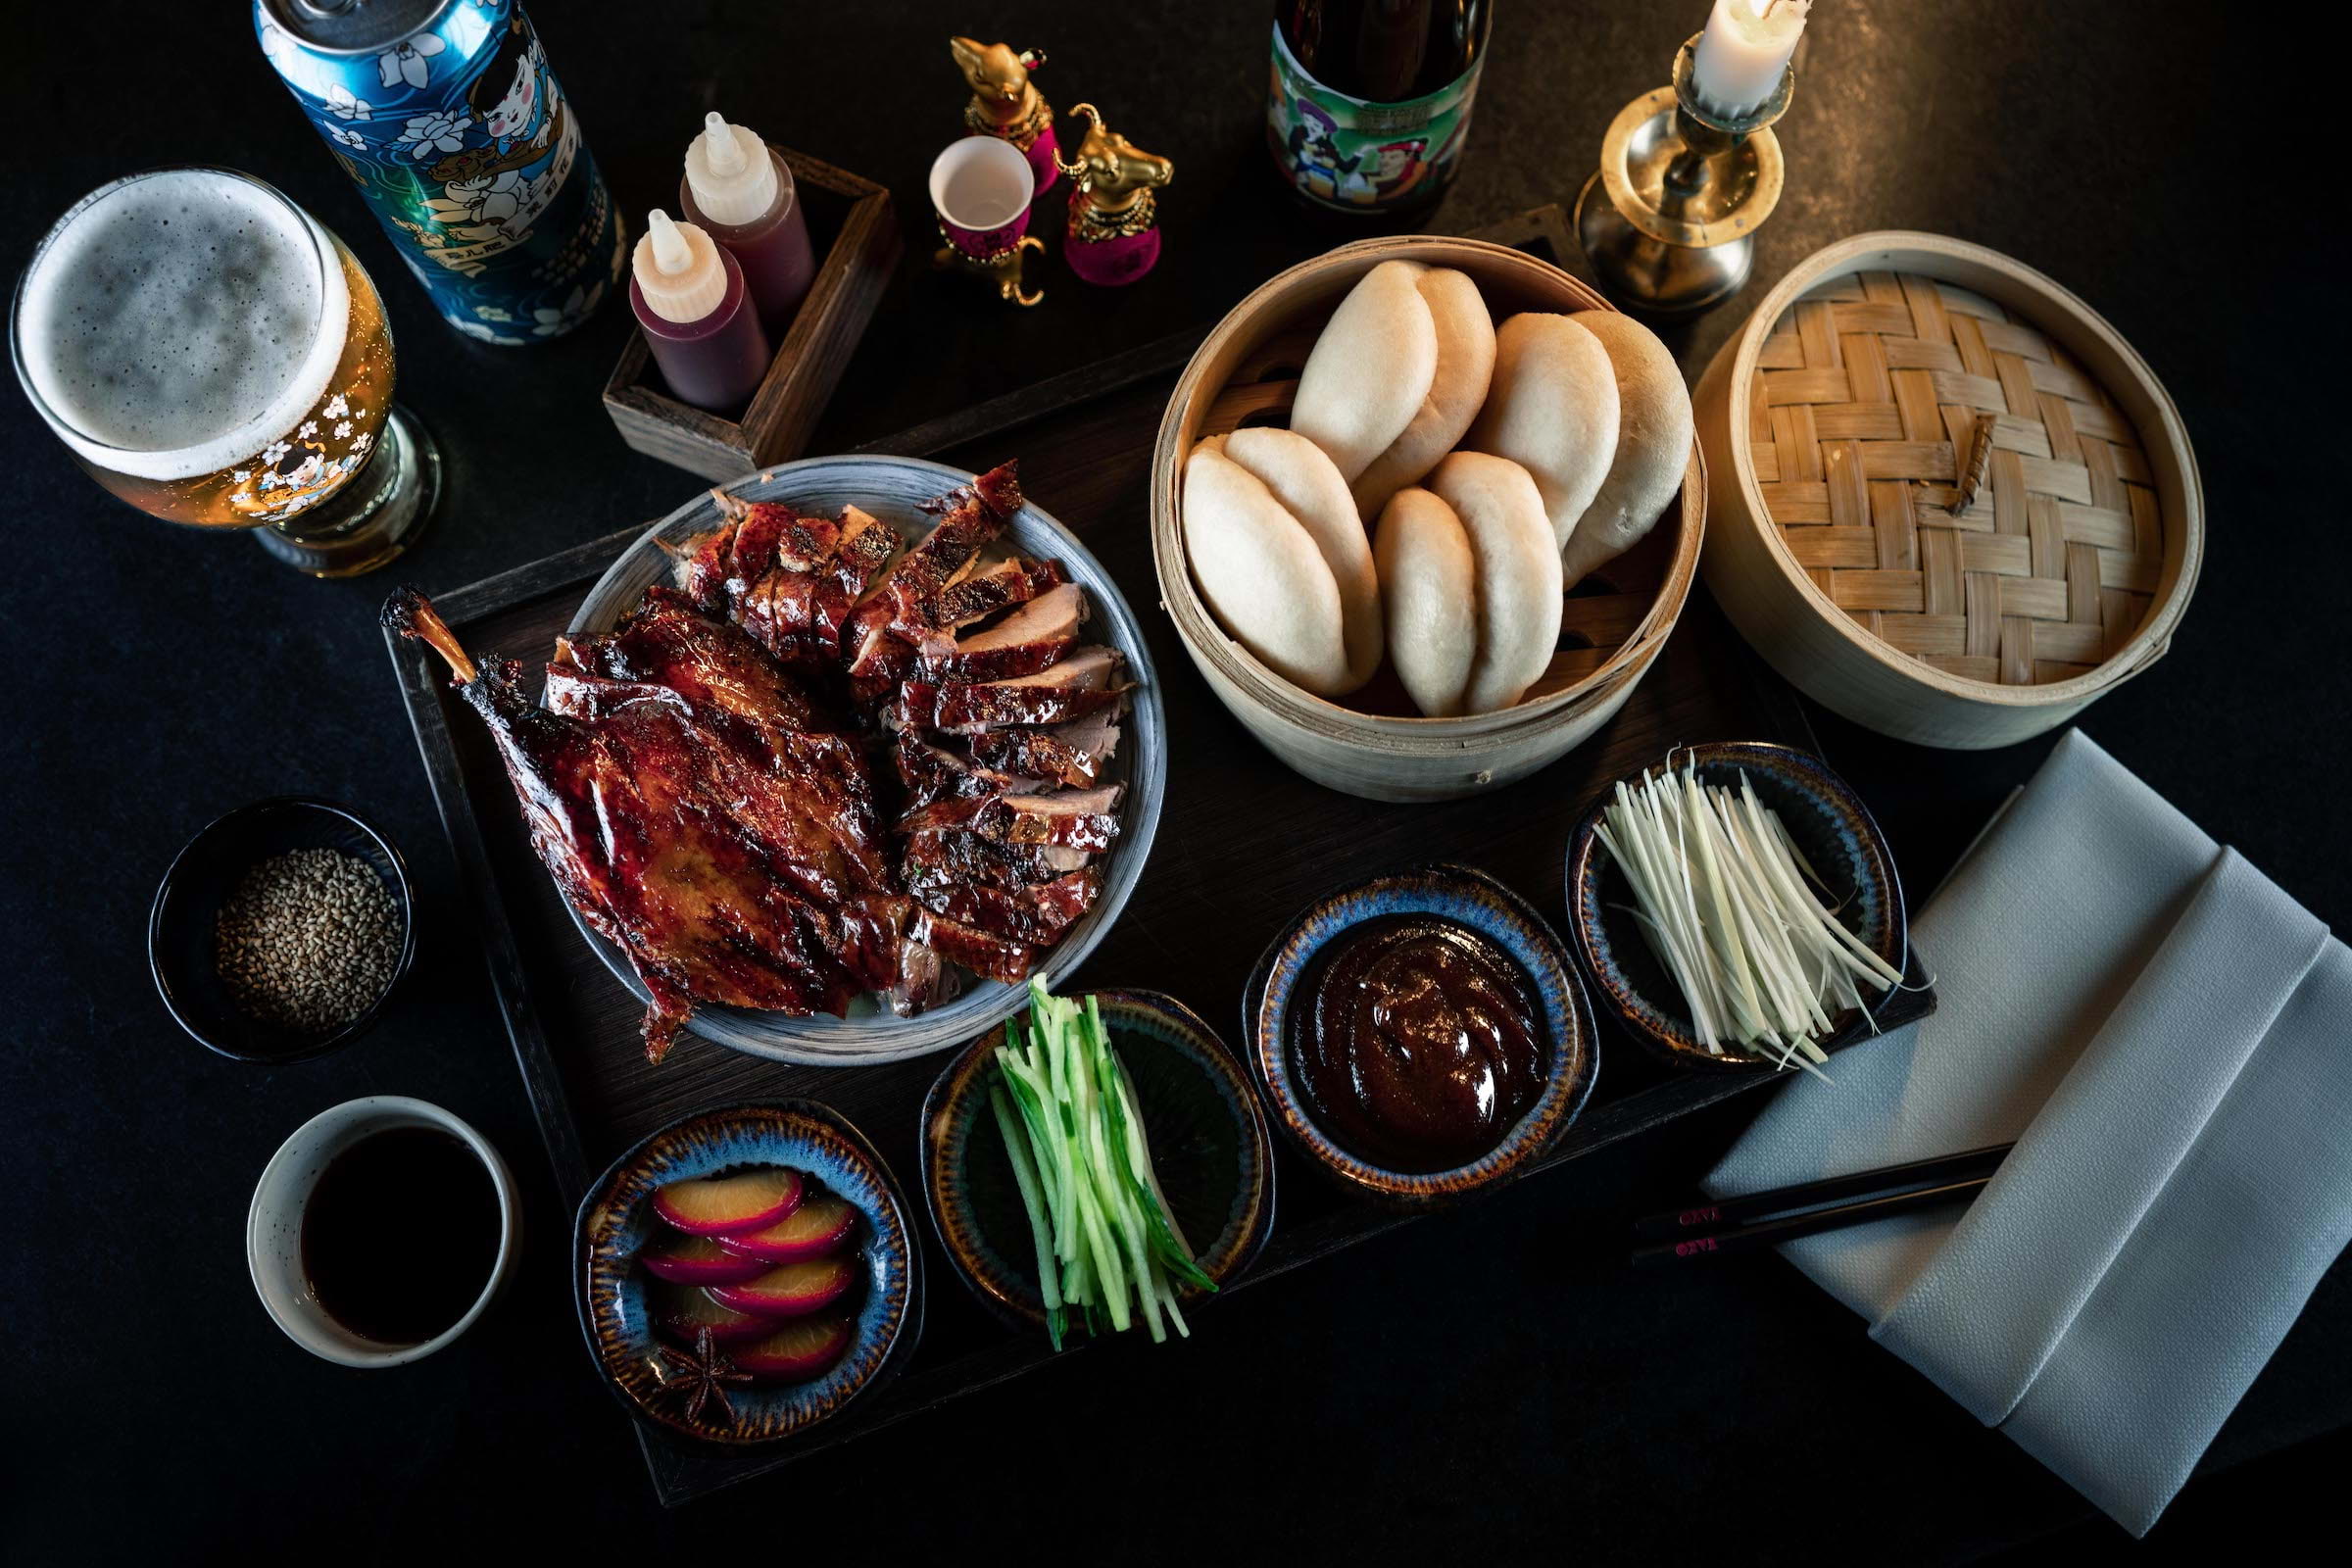 Restaurang Tako firar kinesiskt nyår med stor fest